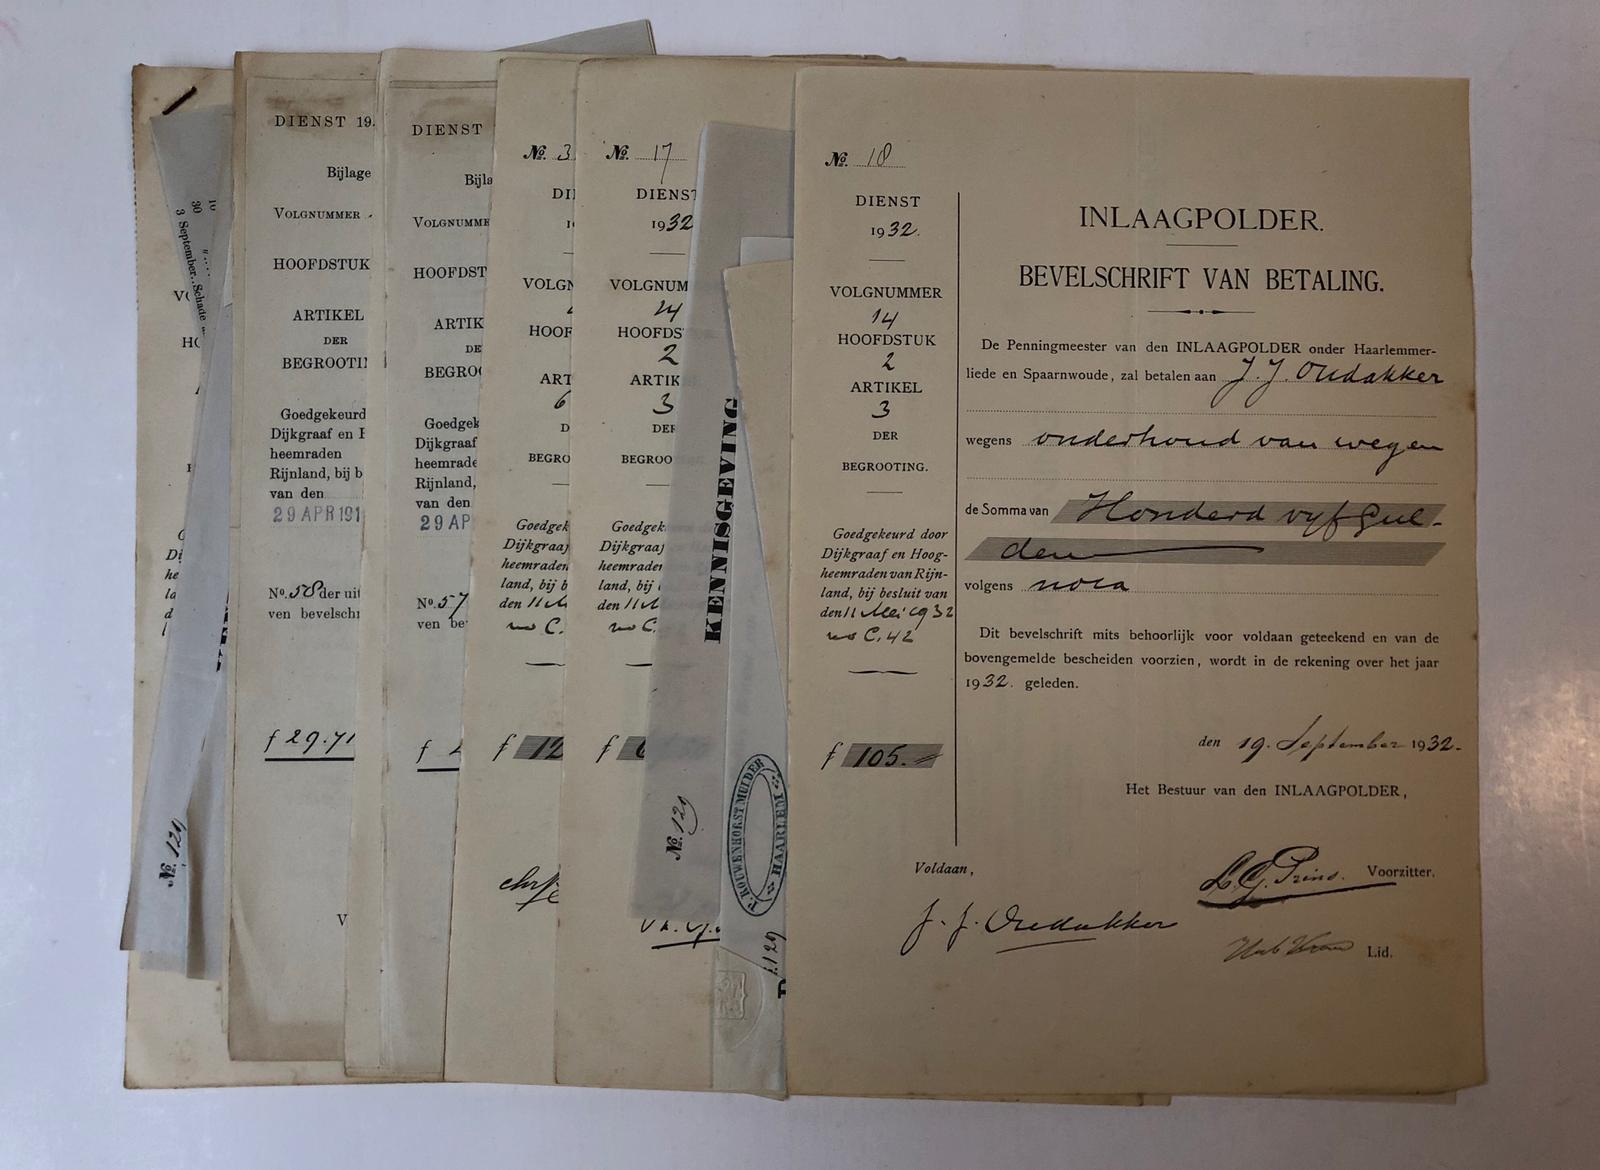  - HAARLEMMERLIEDE, INLAAGPOLDER Ca. 25 notas ingekomen bij het bestuur van de Inlaagpolder onder Haarlemmerliede, ca. 1860 - ca. 1930.